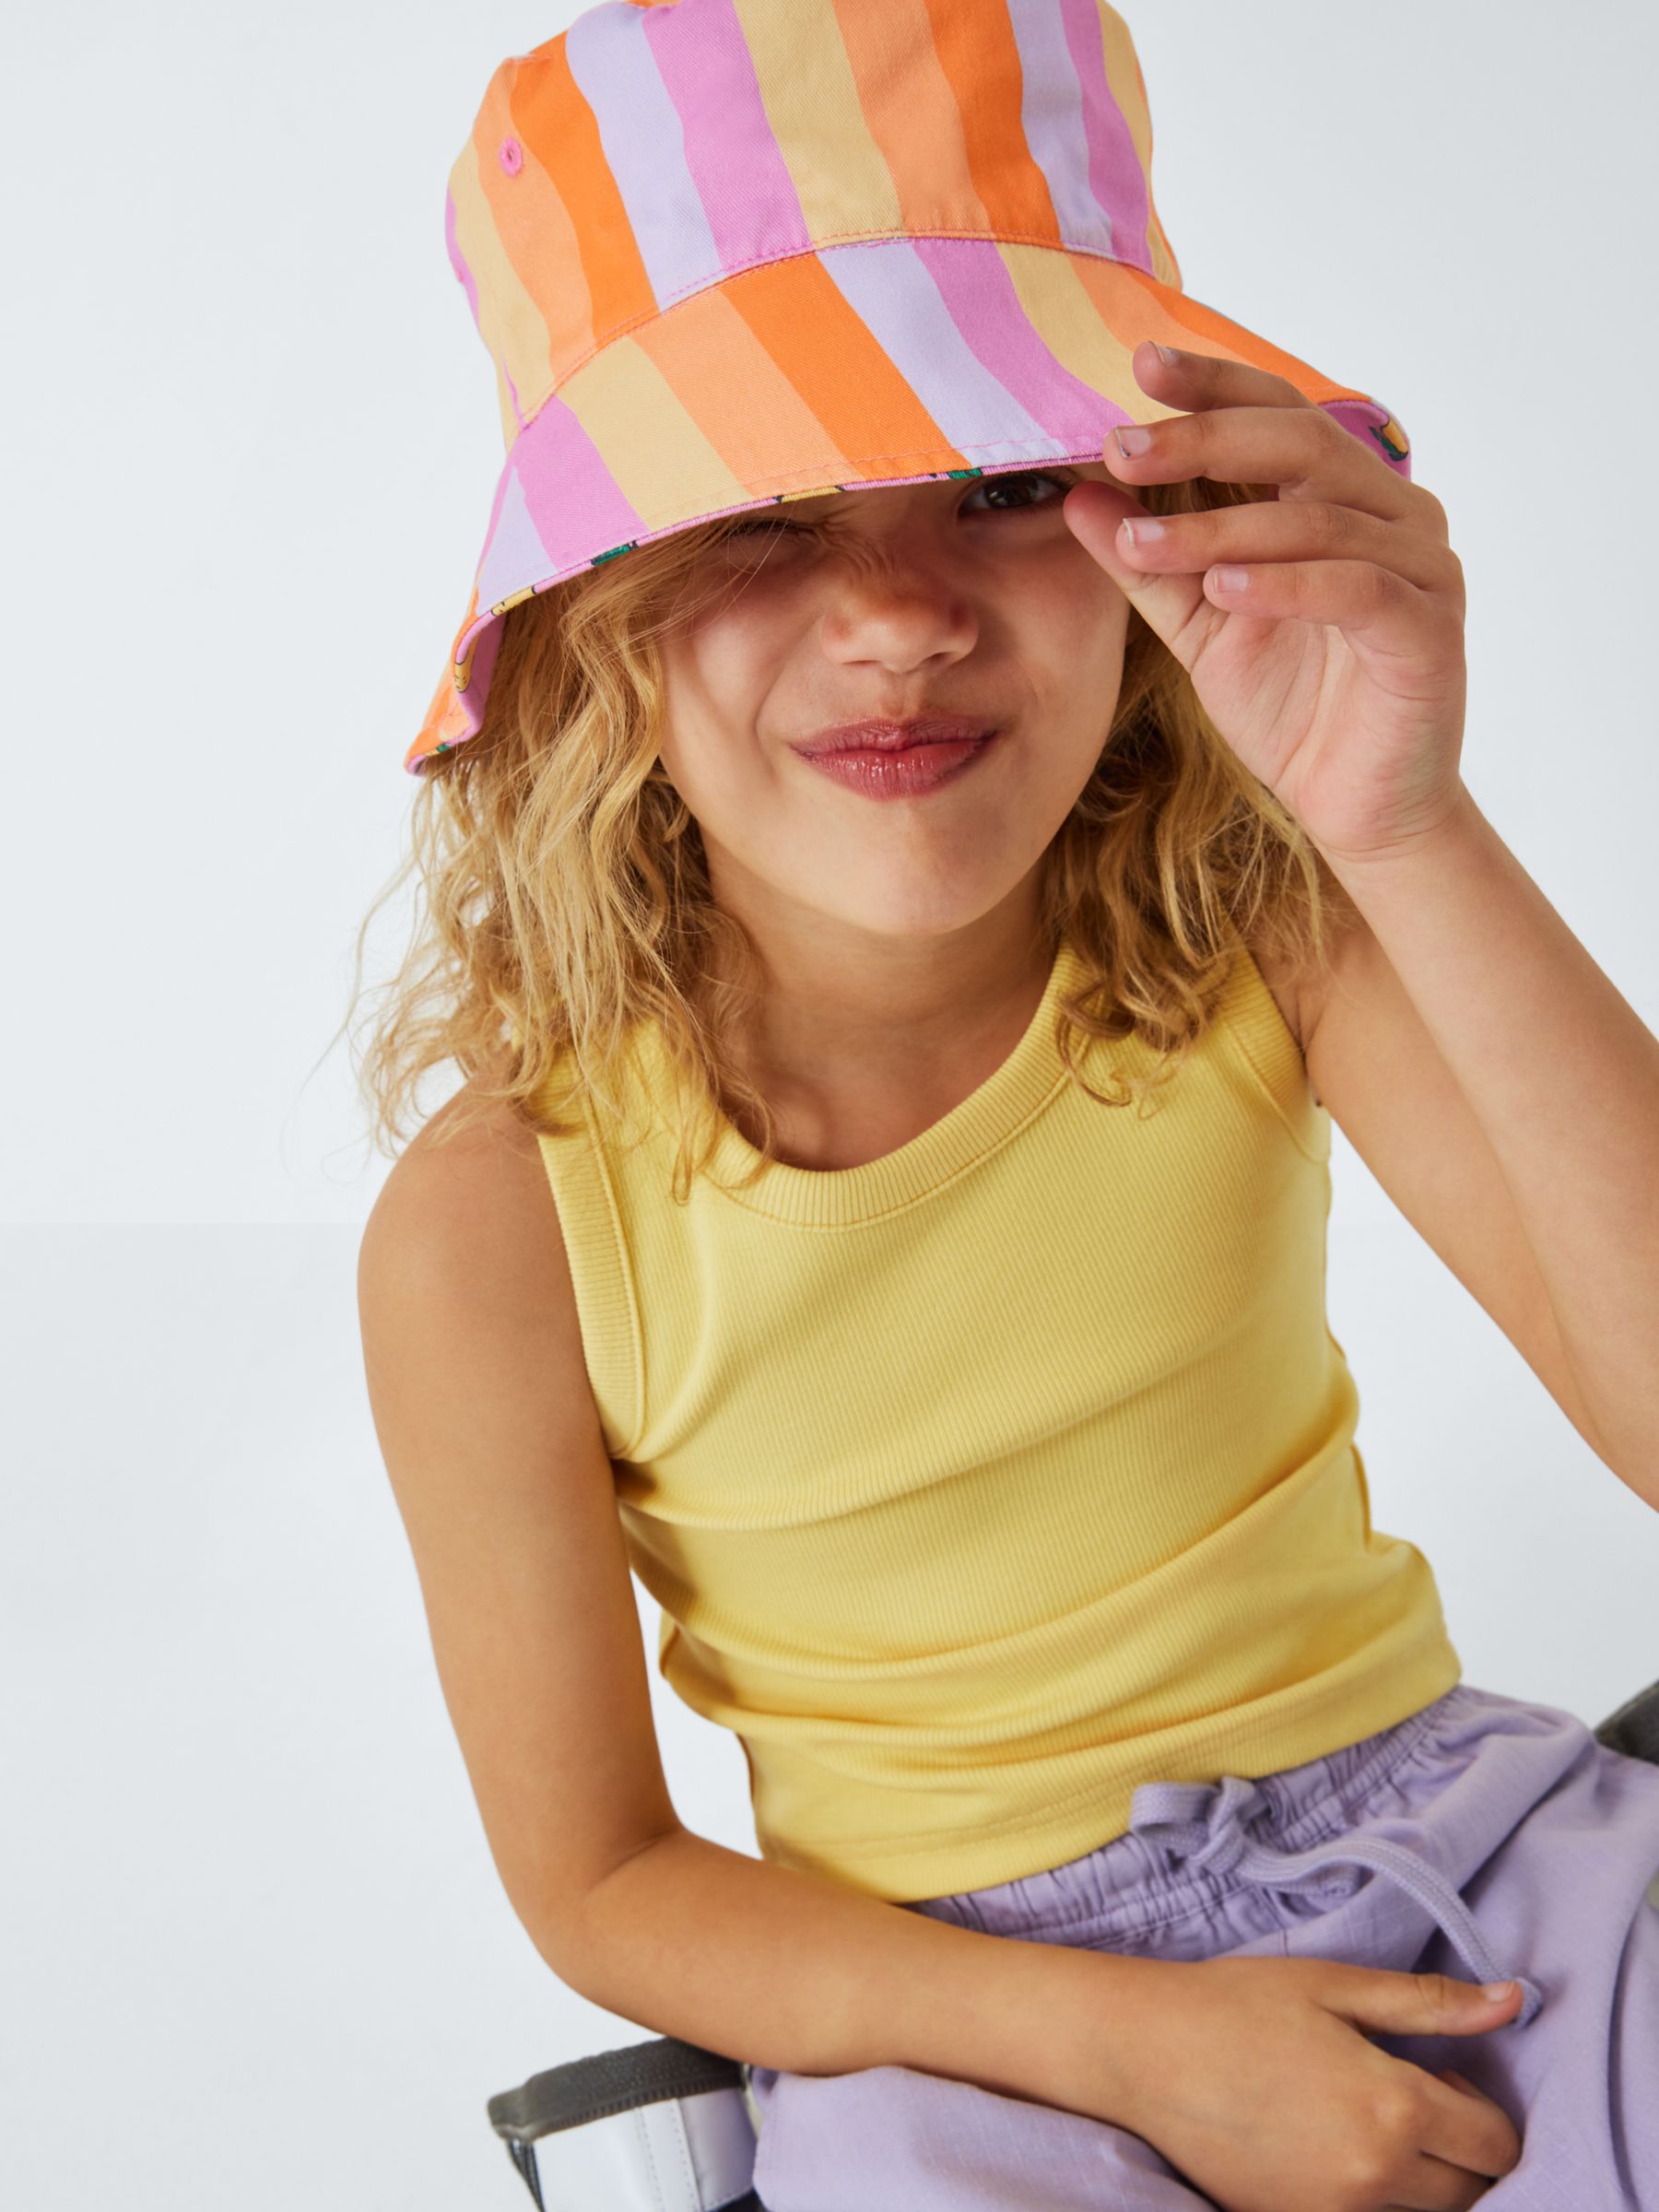 John Lewis ANYDAY Kids' Lemon Stripe Reversible Hat, Multi, 6-8 years